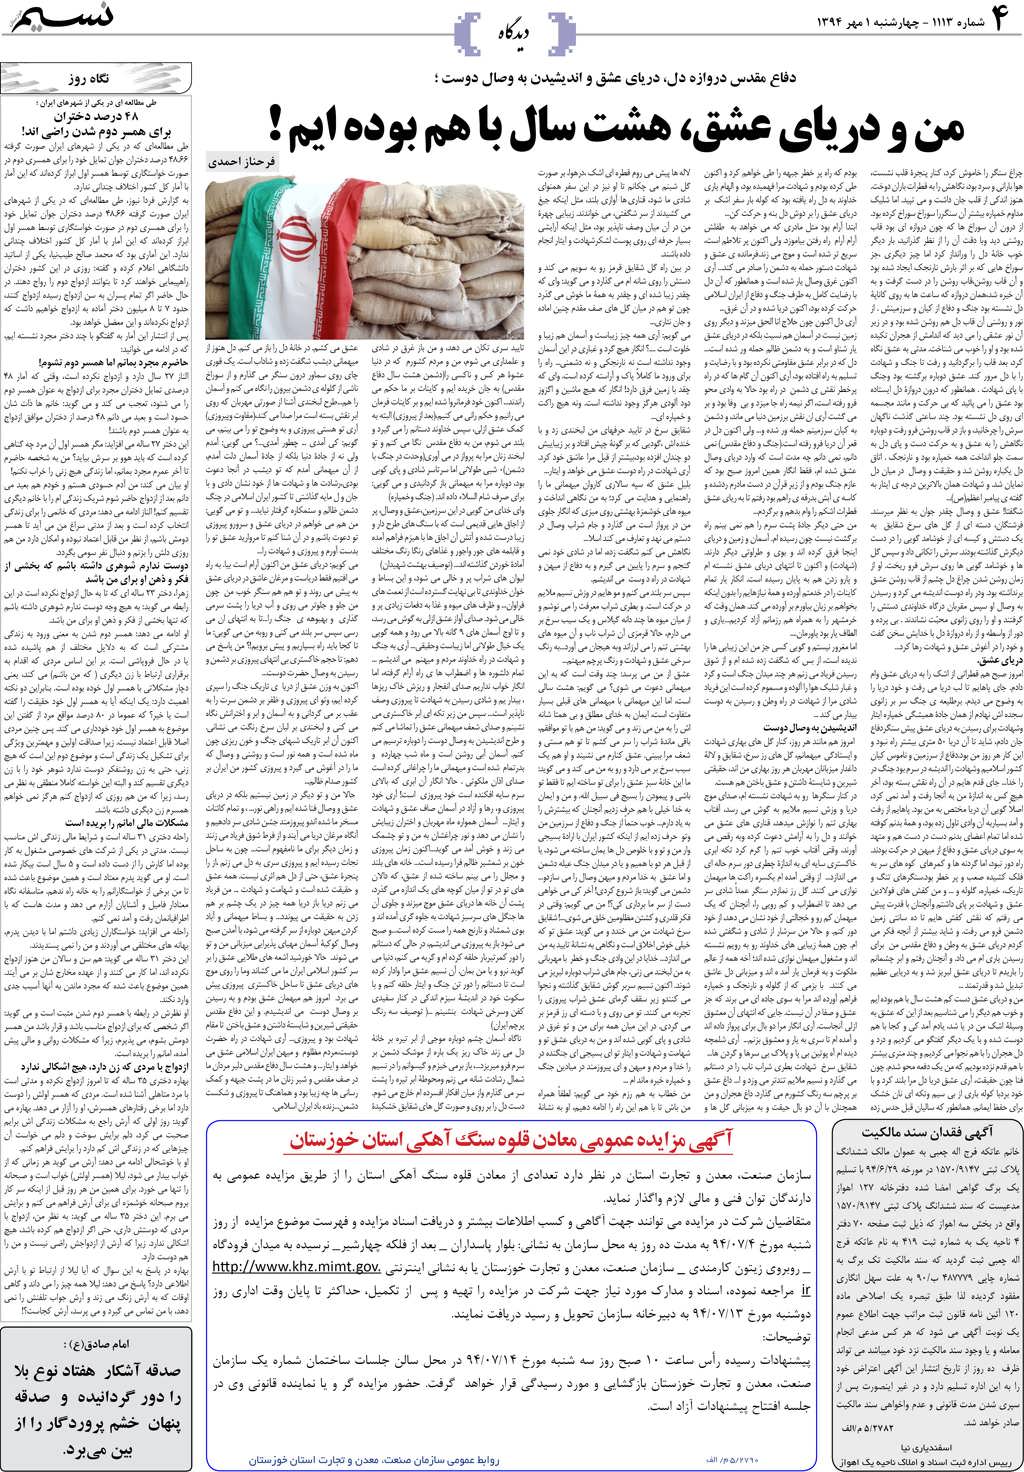 صفحه دیدگاه روزنامه نسیم شماره 1113